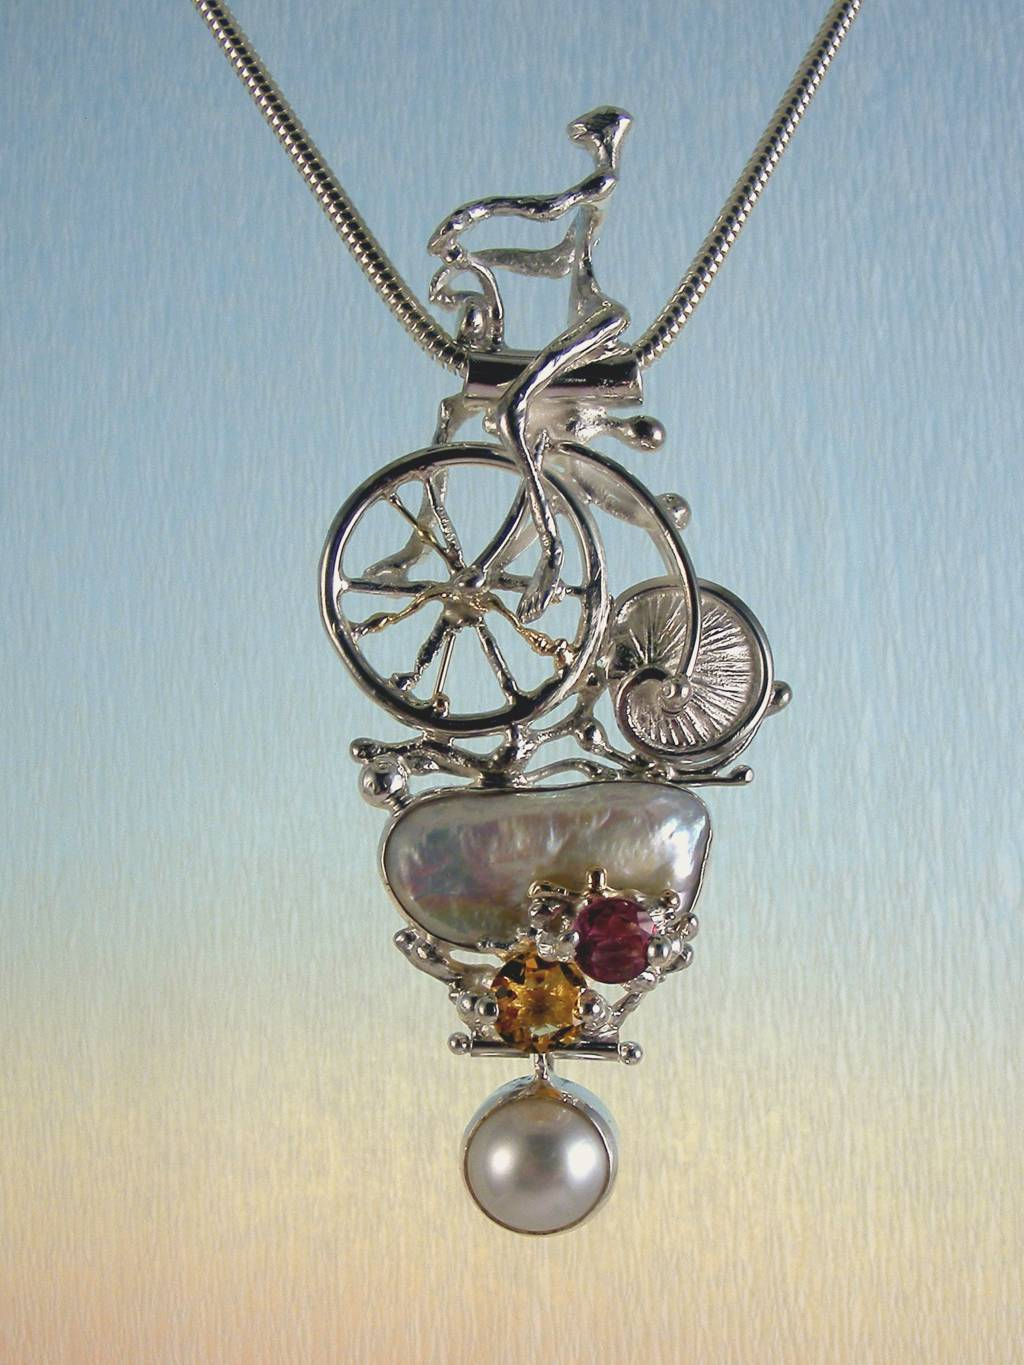 gregory pyra piro 自転車と置物の概念的なペンダント3896、歴史的な自転車のペンダント、シェルホイールペンダント刻まれた自転車、概念の刻まれた宝石、自転車と置物の概念のペンダント、琥珀とアメジストの概念のペンダント、ヨーロッパの宝石メーカーヨーロッパの手作りジュエリー、ヨーロッパ製のペンダント琥珀と スターリングシルバーとK14ゴールドのファセットアメジスト